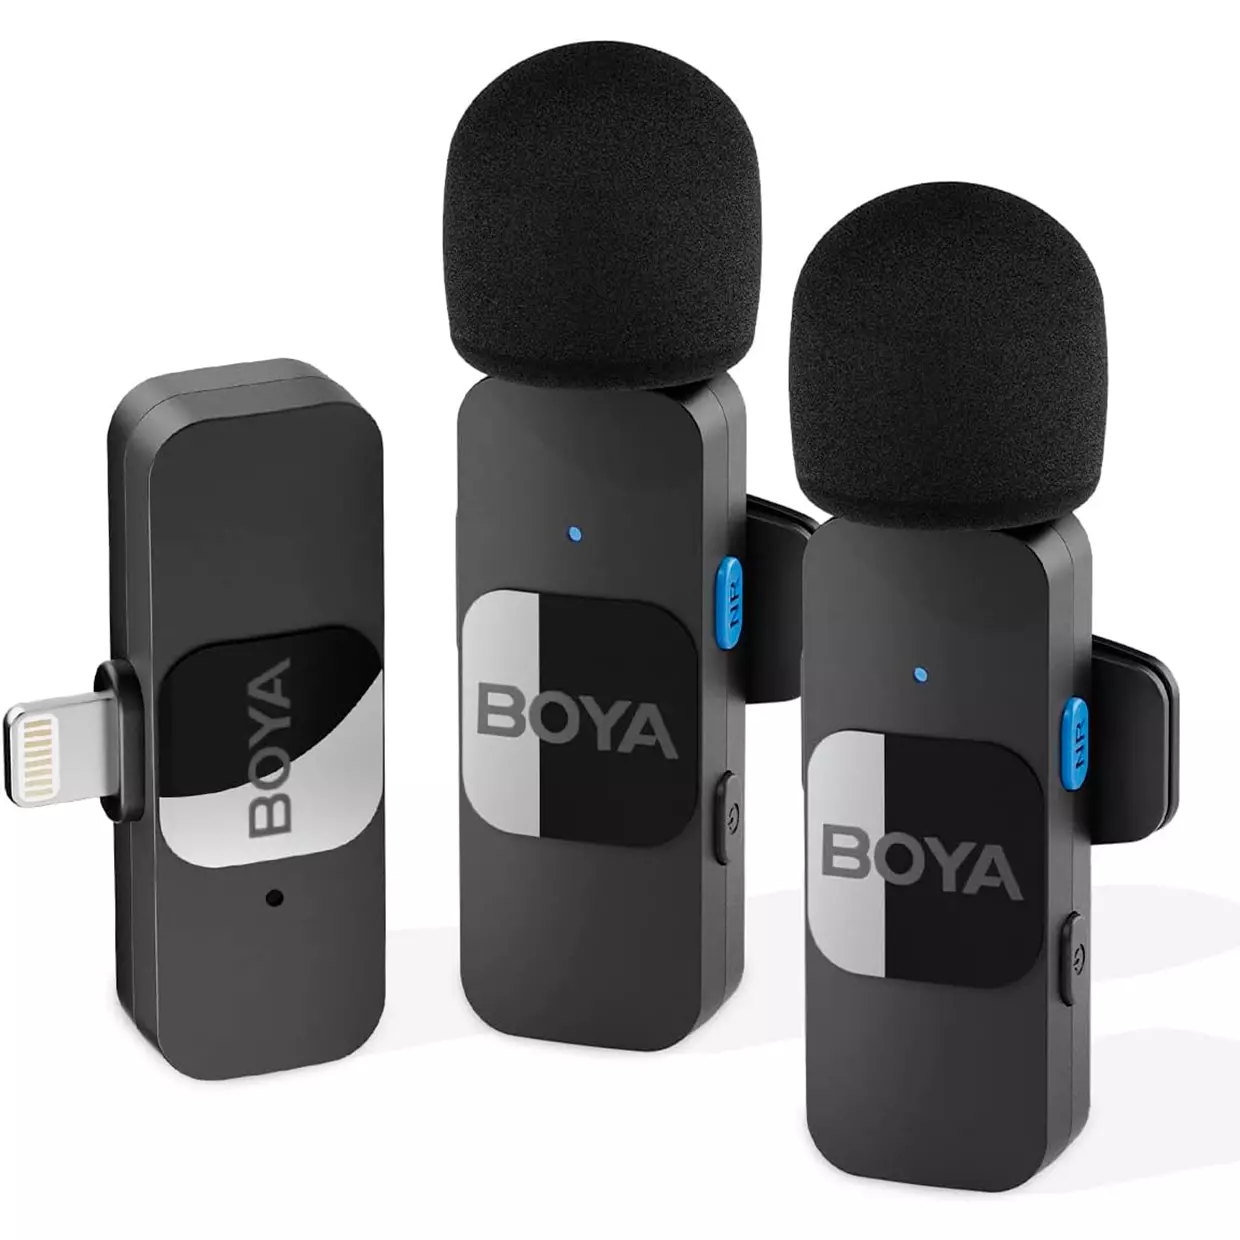 Micrófono inalámbrico dual para iPhone iPad, micrófono Lavalier inalámbrico  profesional para grabación de video, micrófono de solapa con clip para